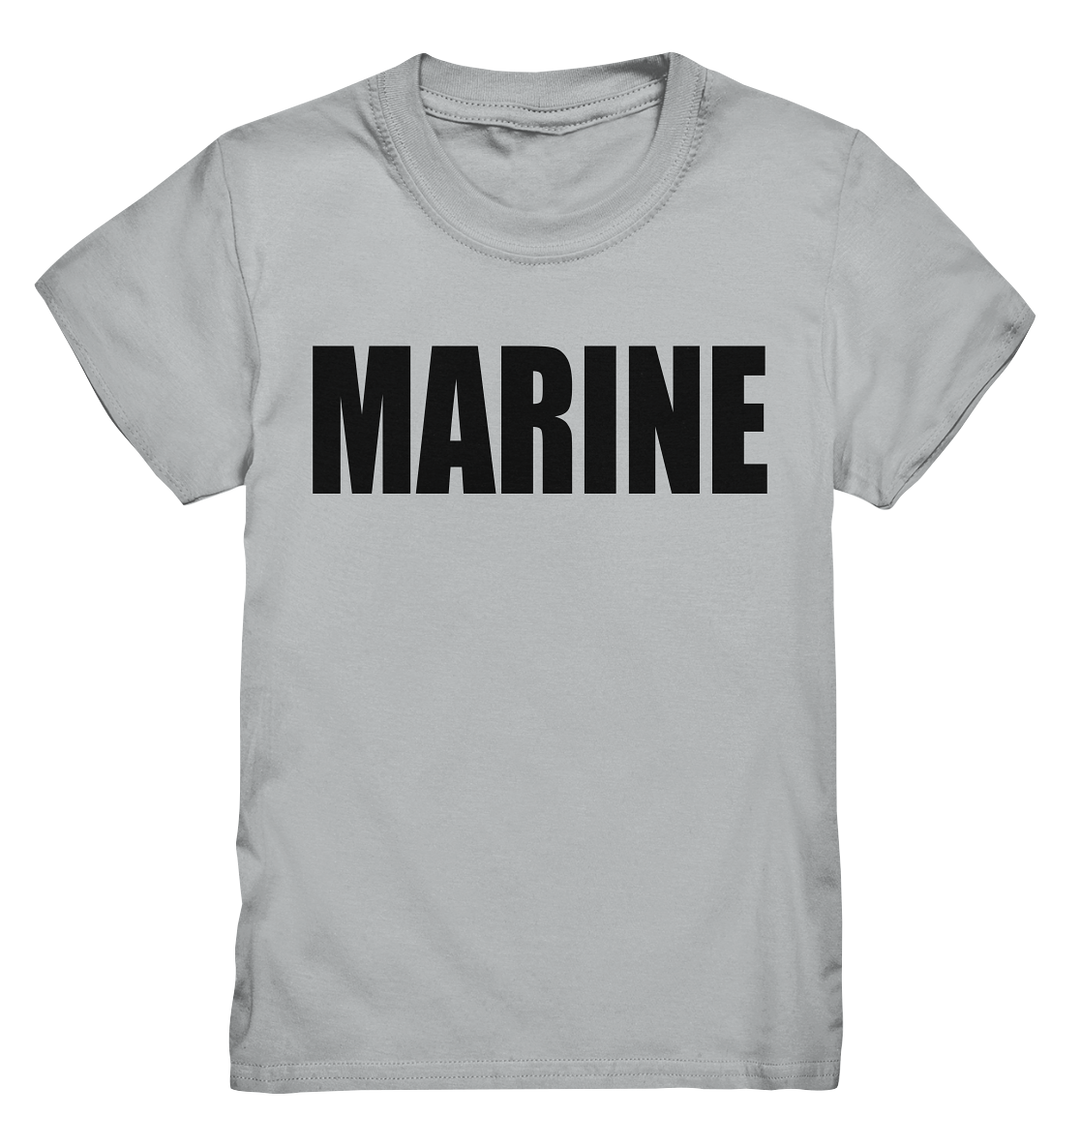 MARINE - Kids Premium Shirt